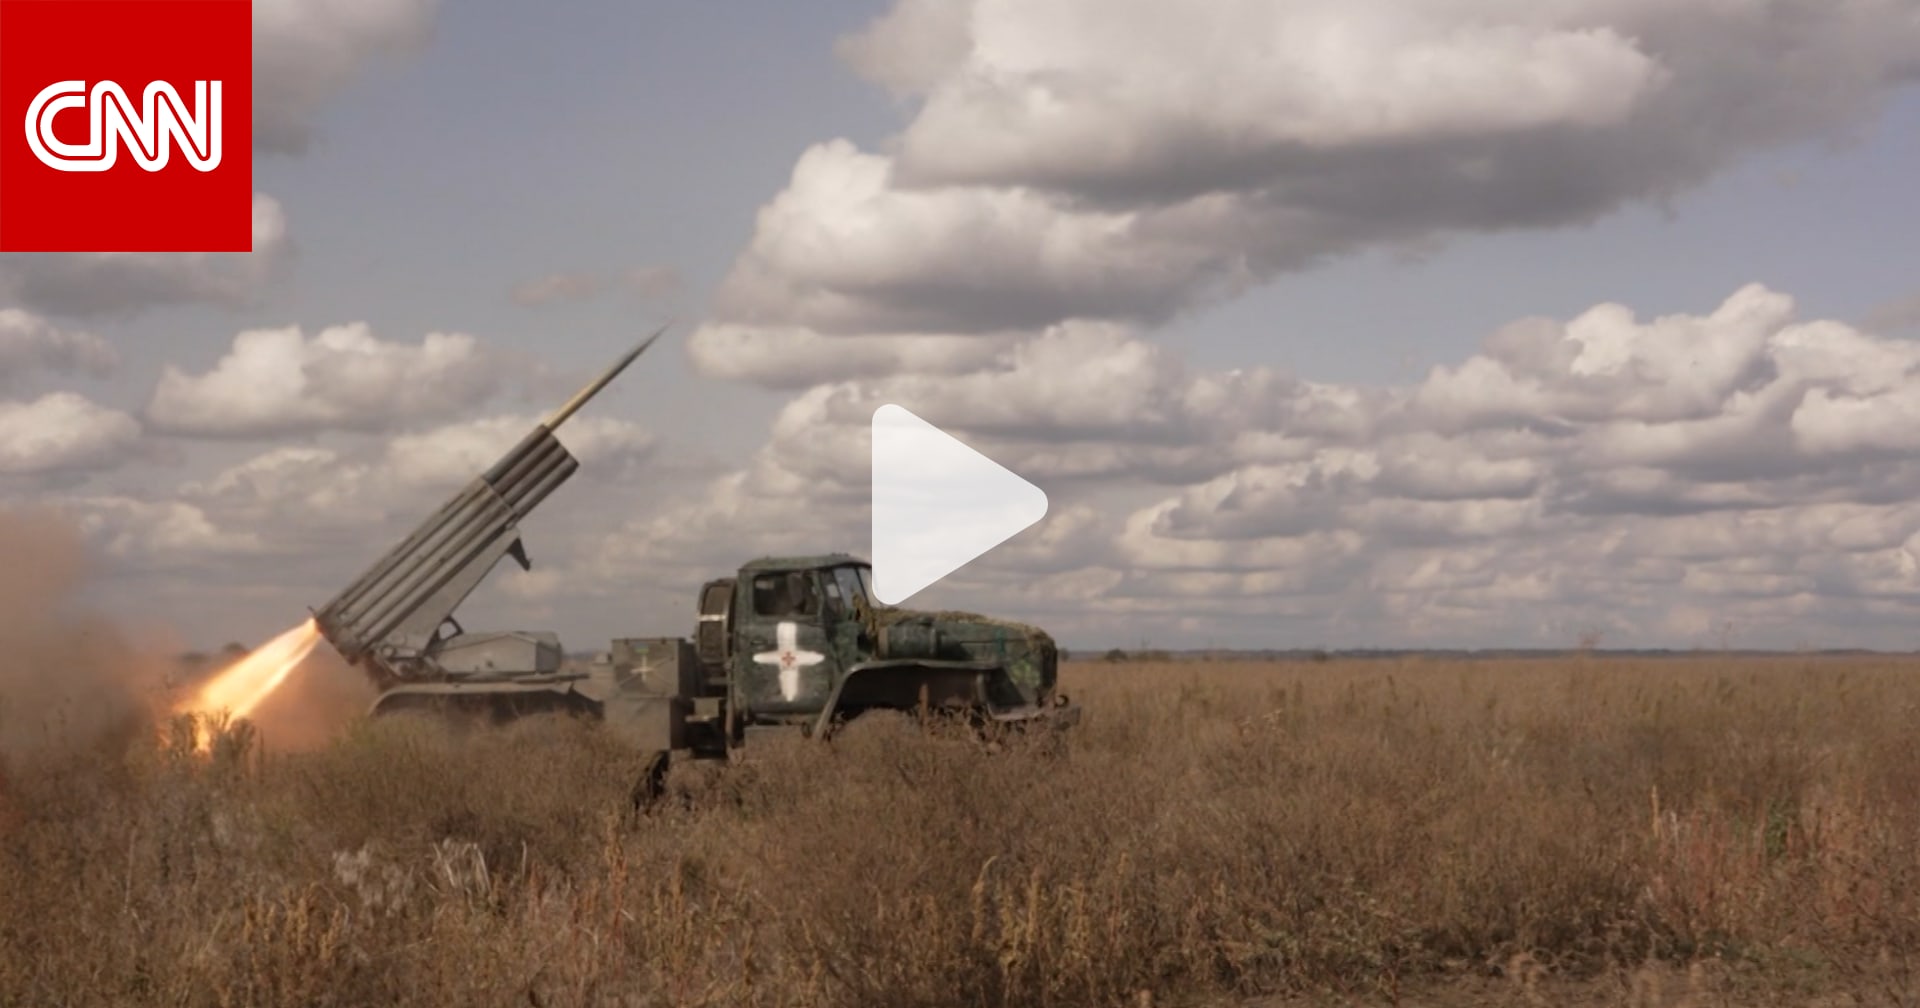 شاهد كيف يحاول جنود أوكرانيون استهداف الجيش الروسي رغم قلة الذخيرة